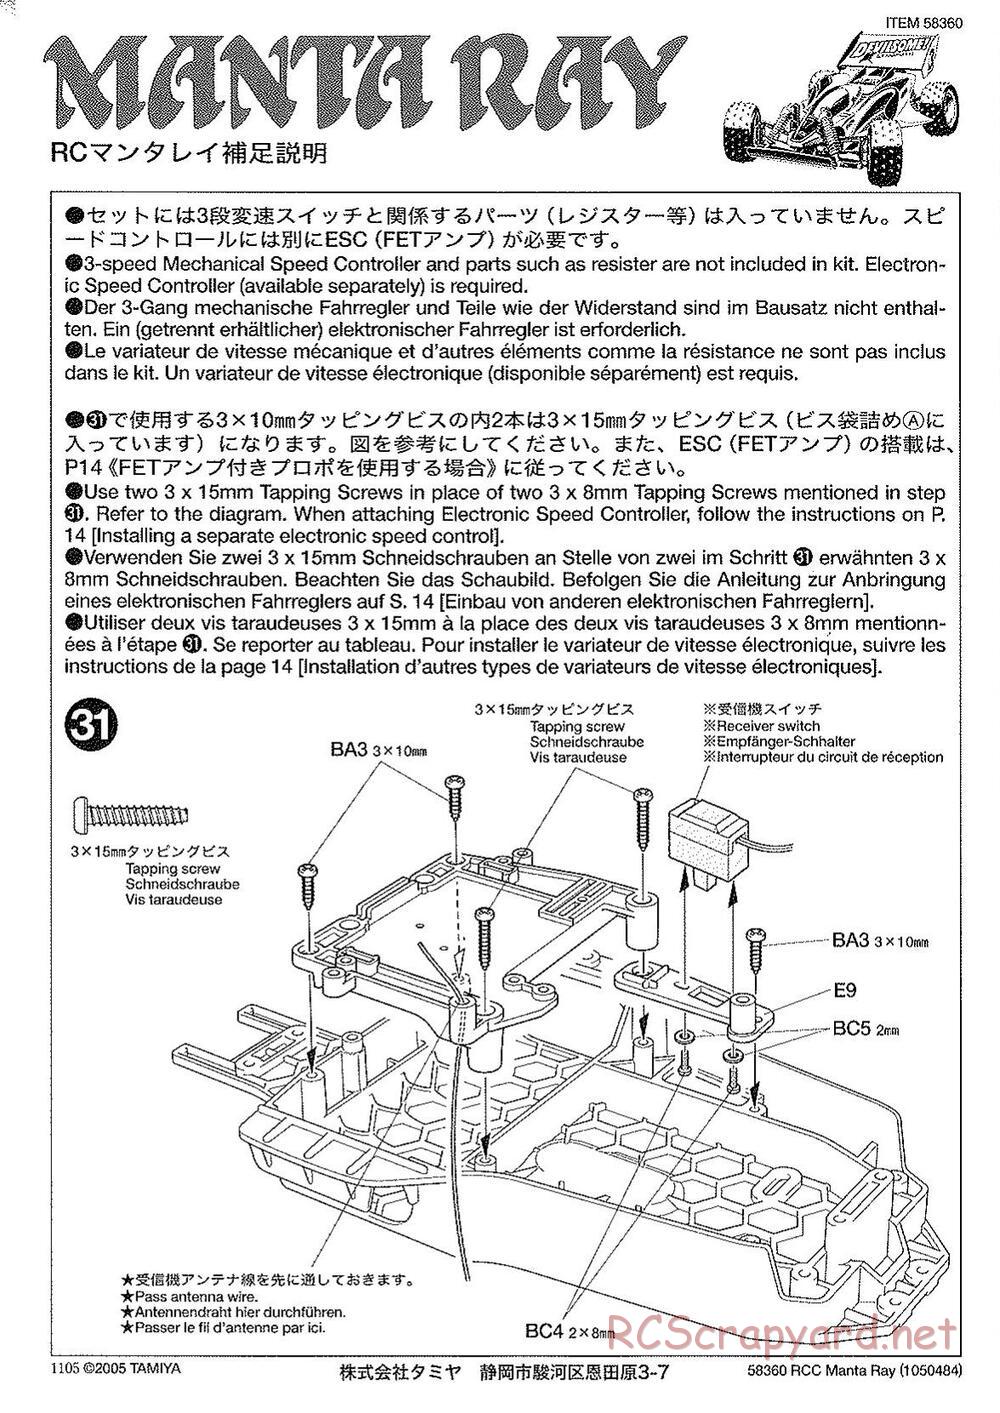 Tamiya - Manta Ray 2005 - DF-01 Chassis - Manual - Page 2